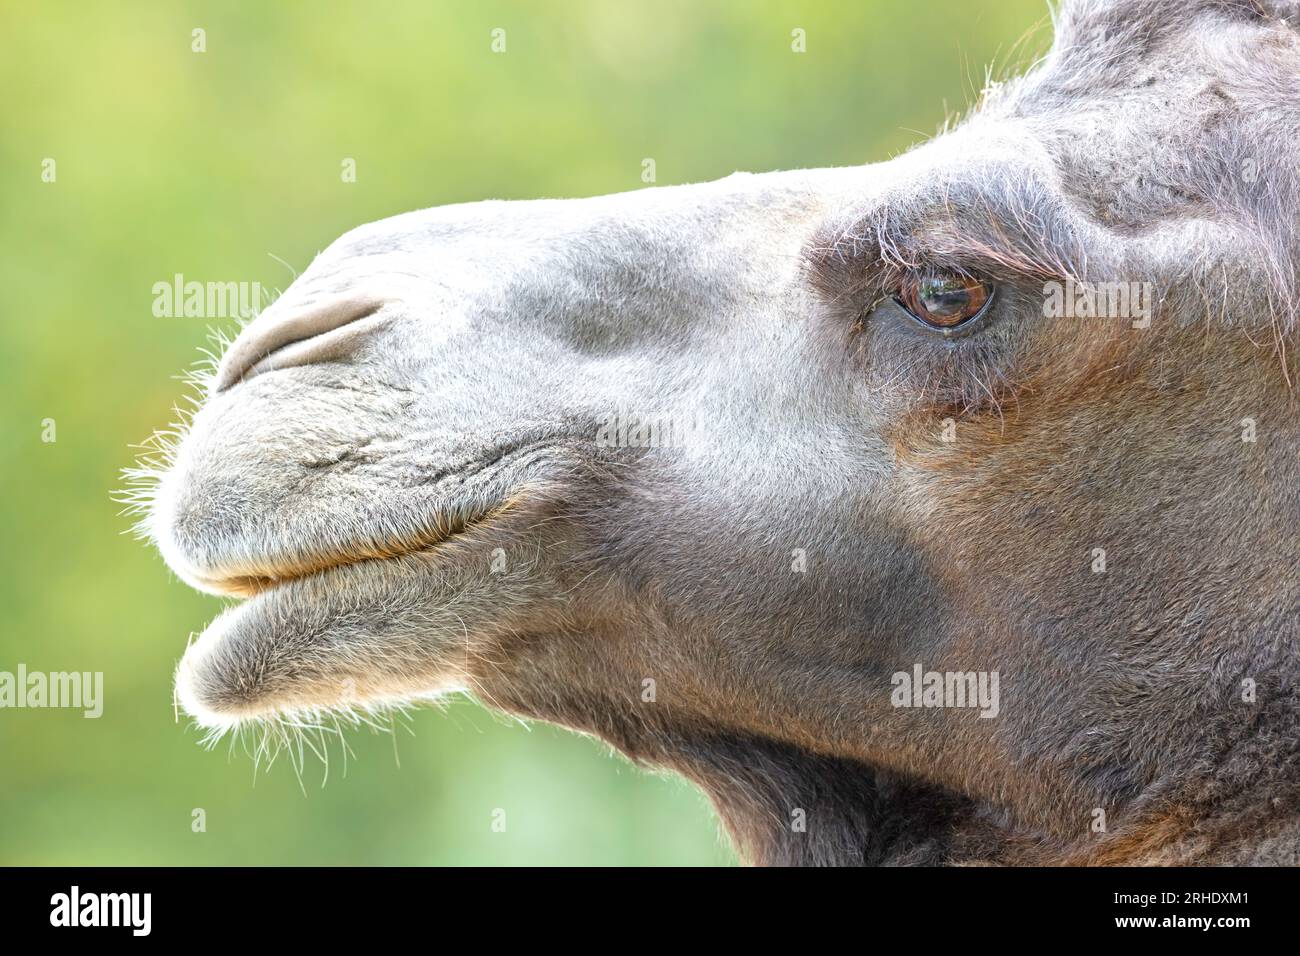 Gros plan d'un chameau adulte, fond vert Banque D'Images